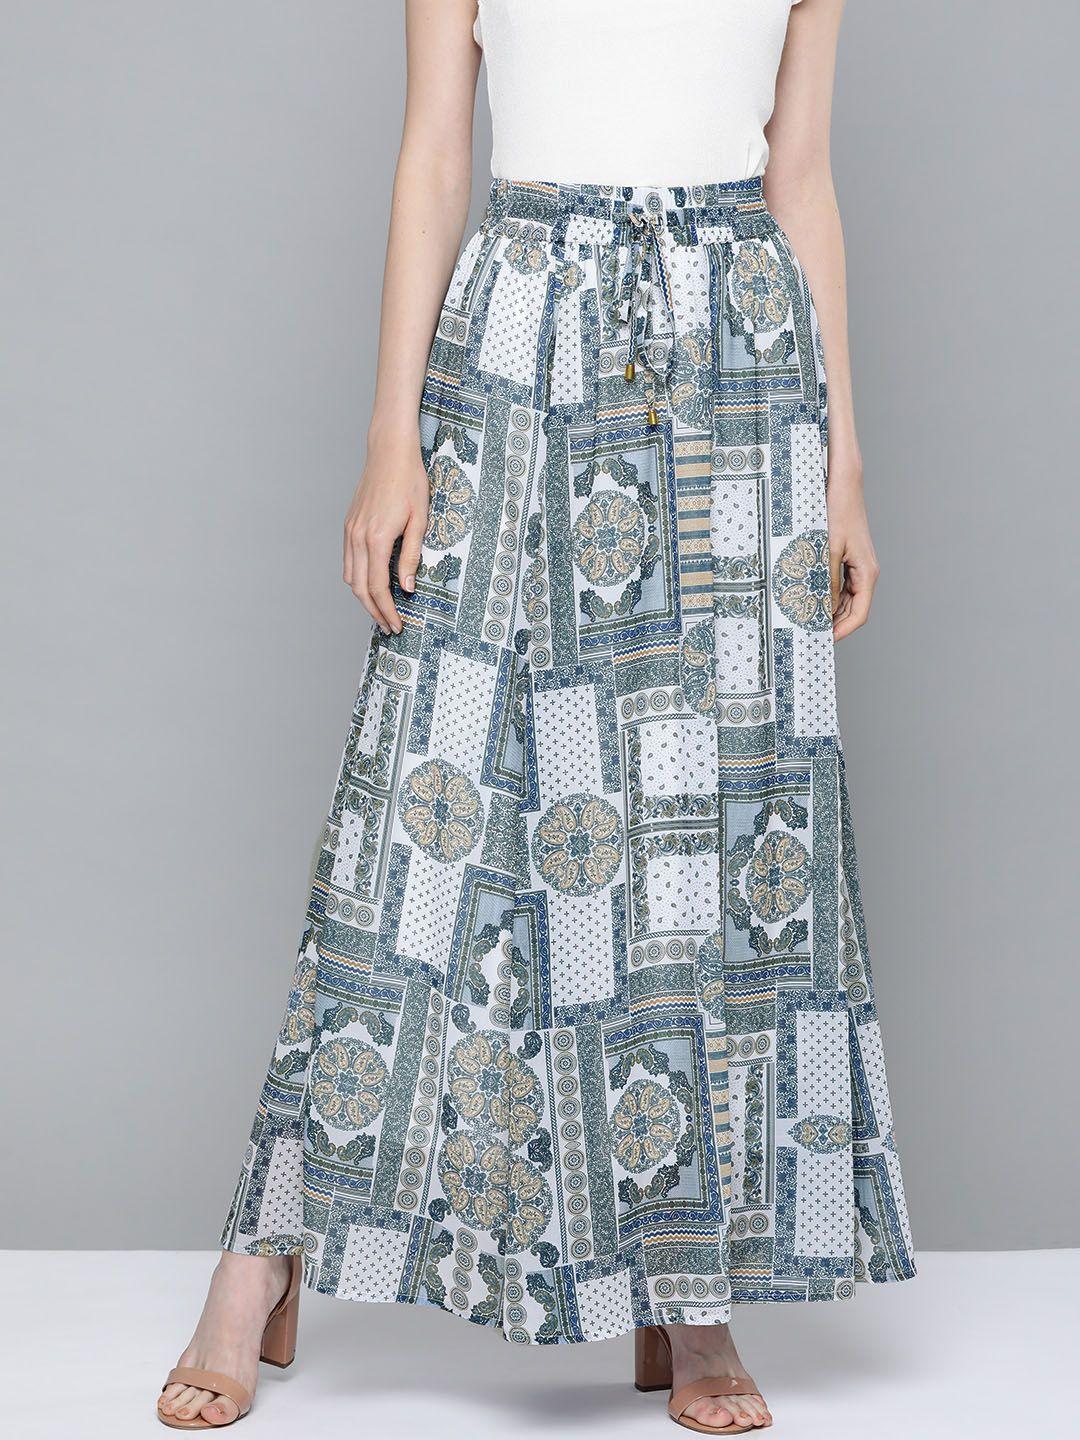 sassafras women off-white & blue ethnic motif printed flared skirt